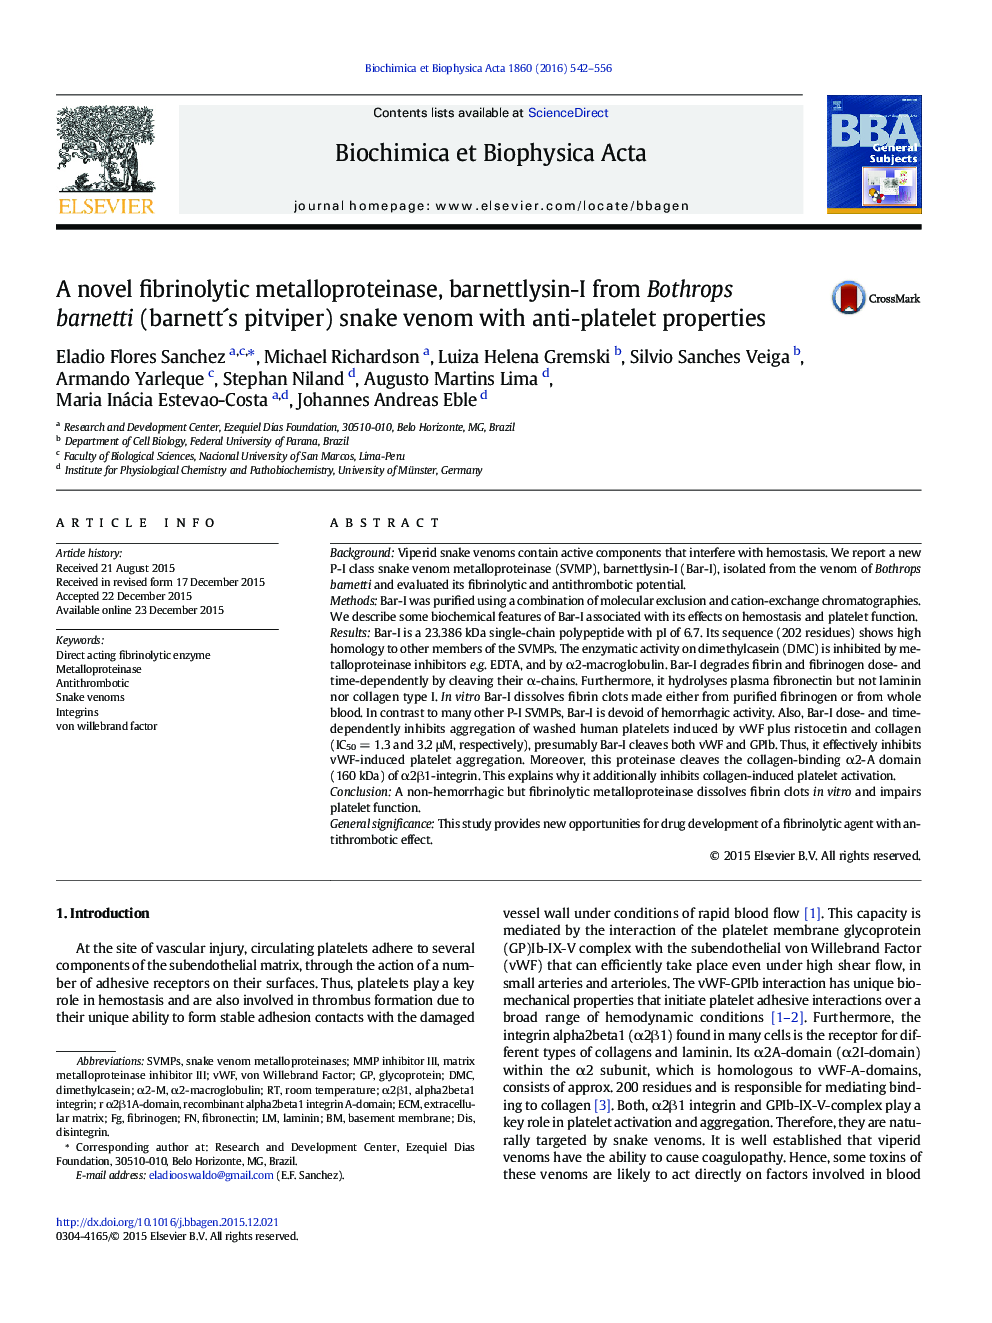 A novel fibrinolytic metalloproteinase, barnettlysin-I from Bothrops barnetti (barnettÂ´s pitviper) snake venom with anti-platelet properties